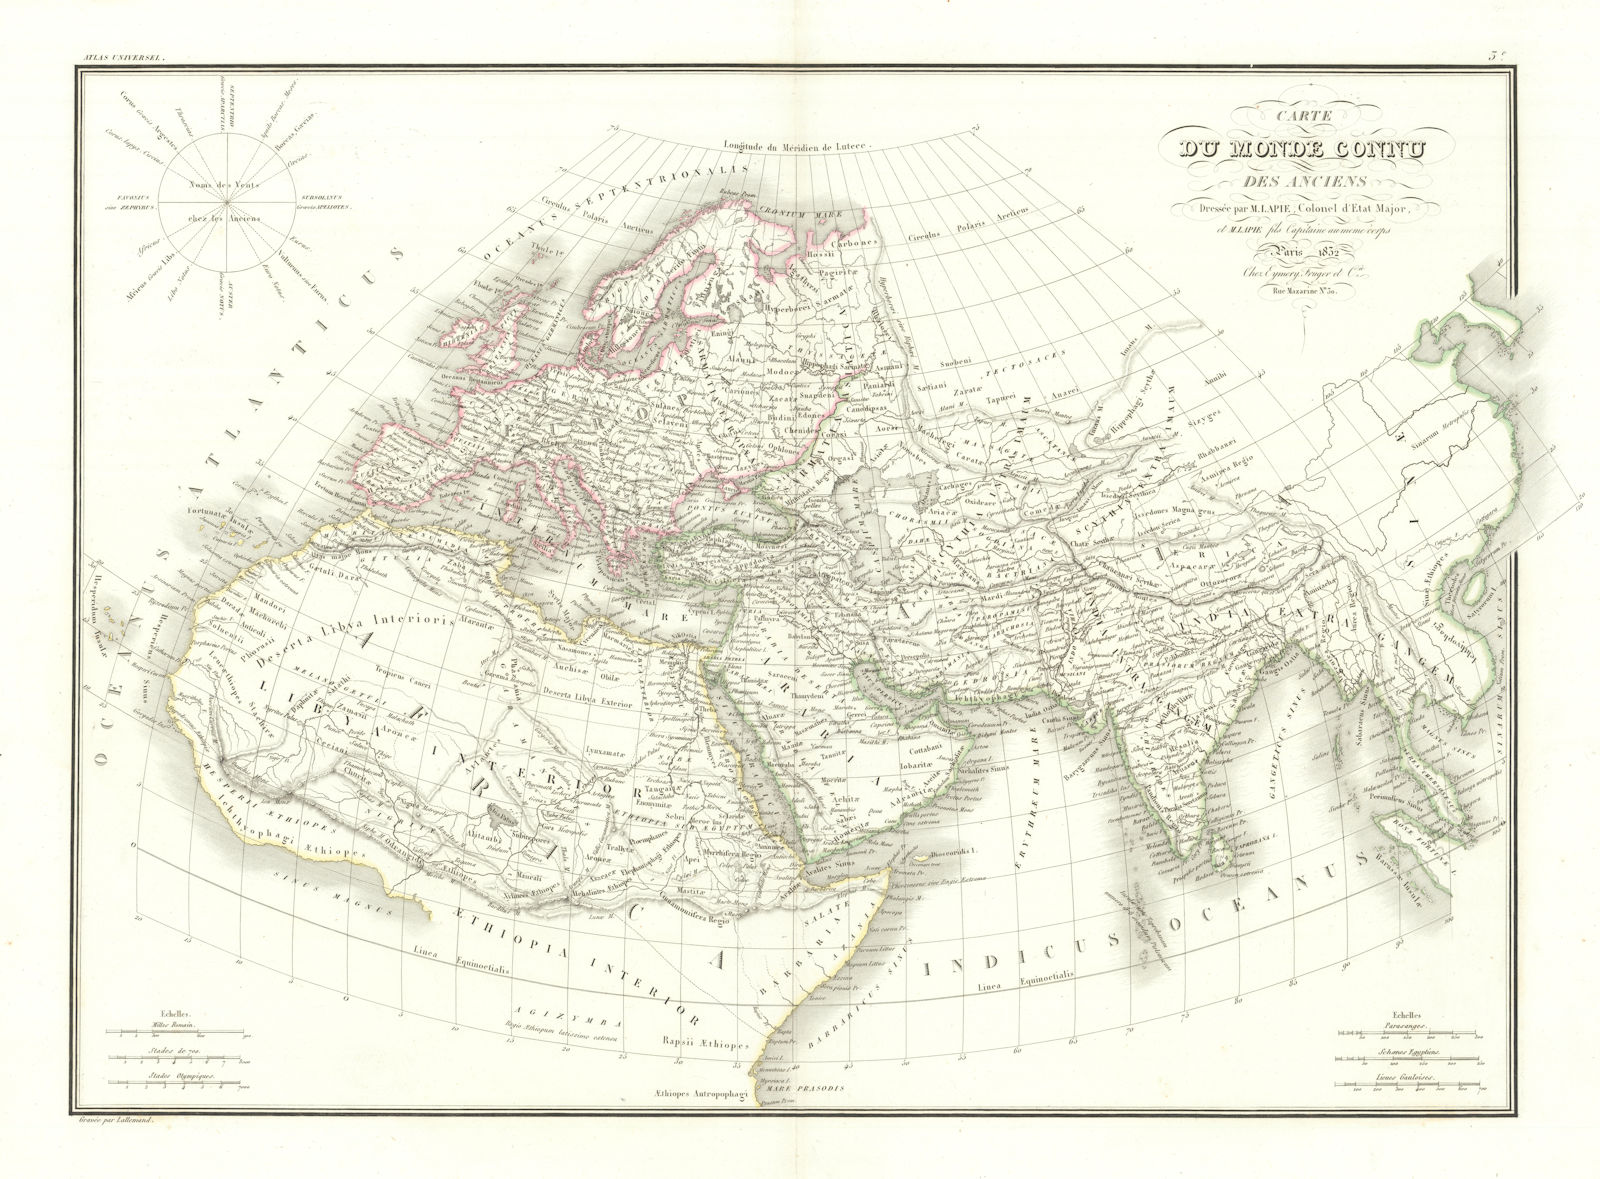 Associate Product Carte du Monde connu des anciens. World as known to the Ancients. LAPIE 1832 map